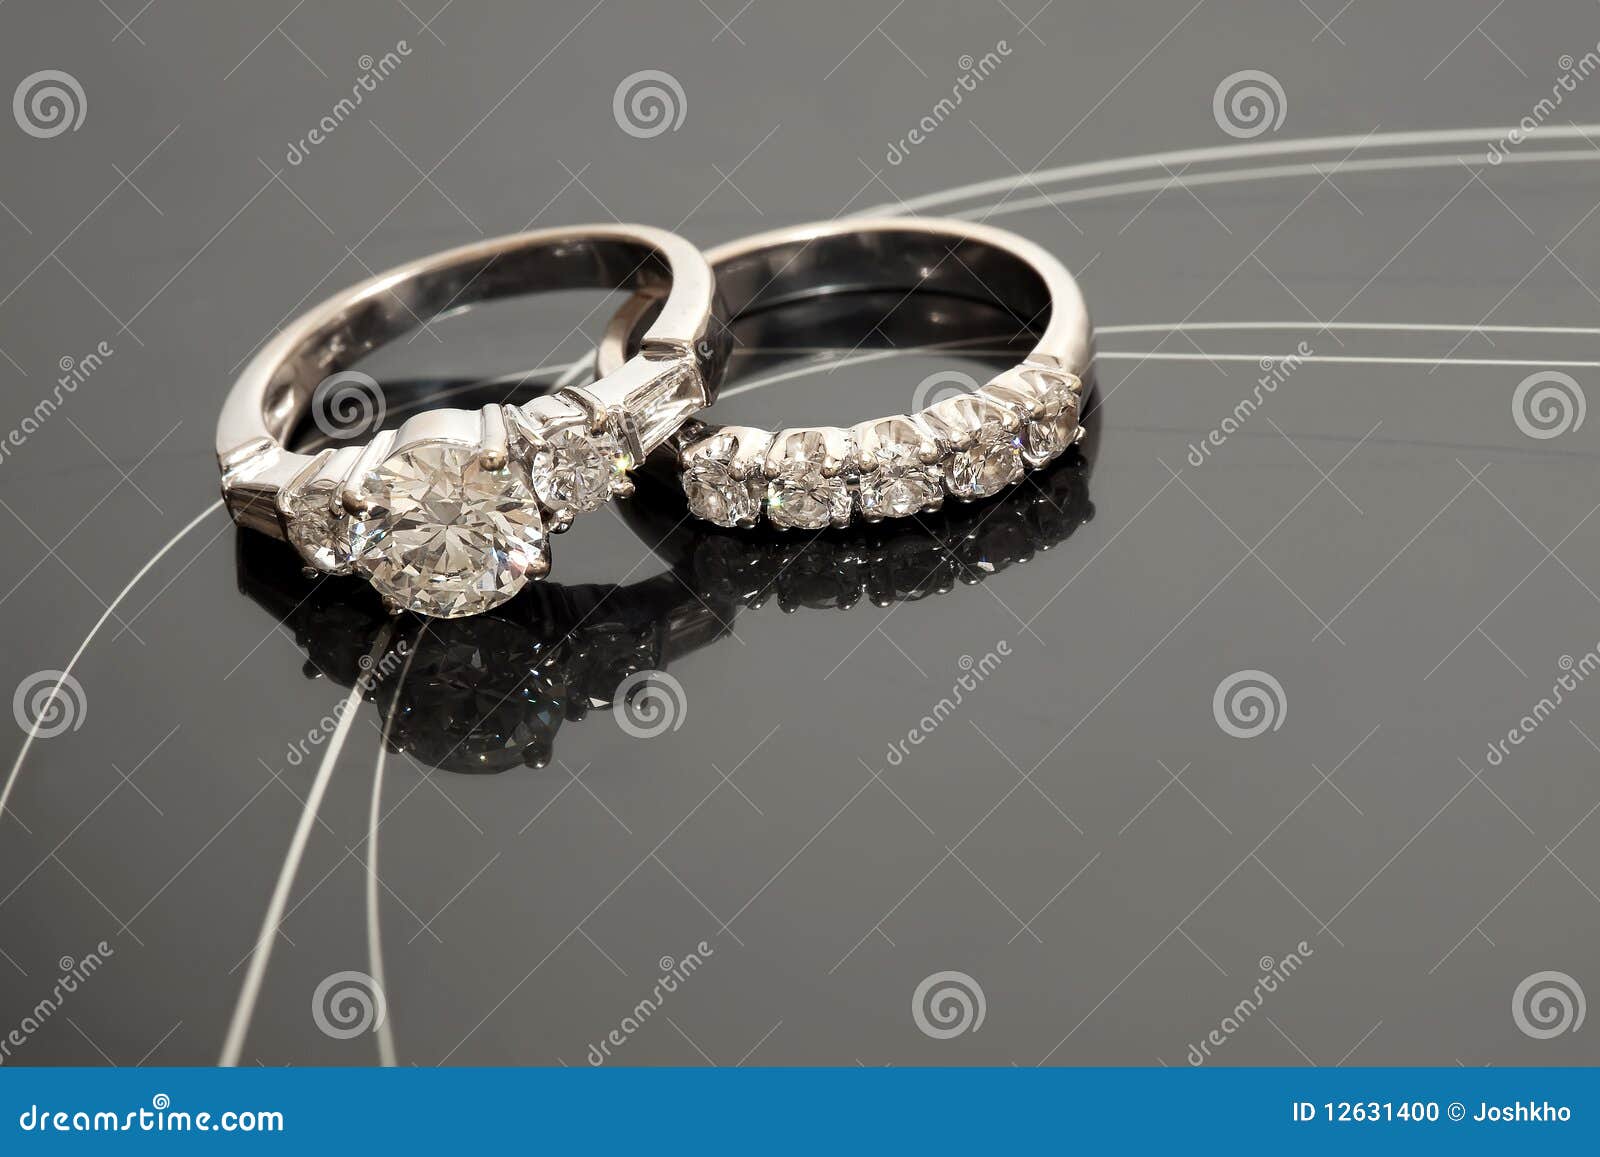 pair of wedding rings